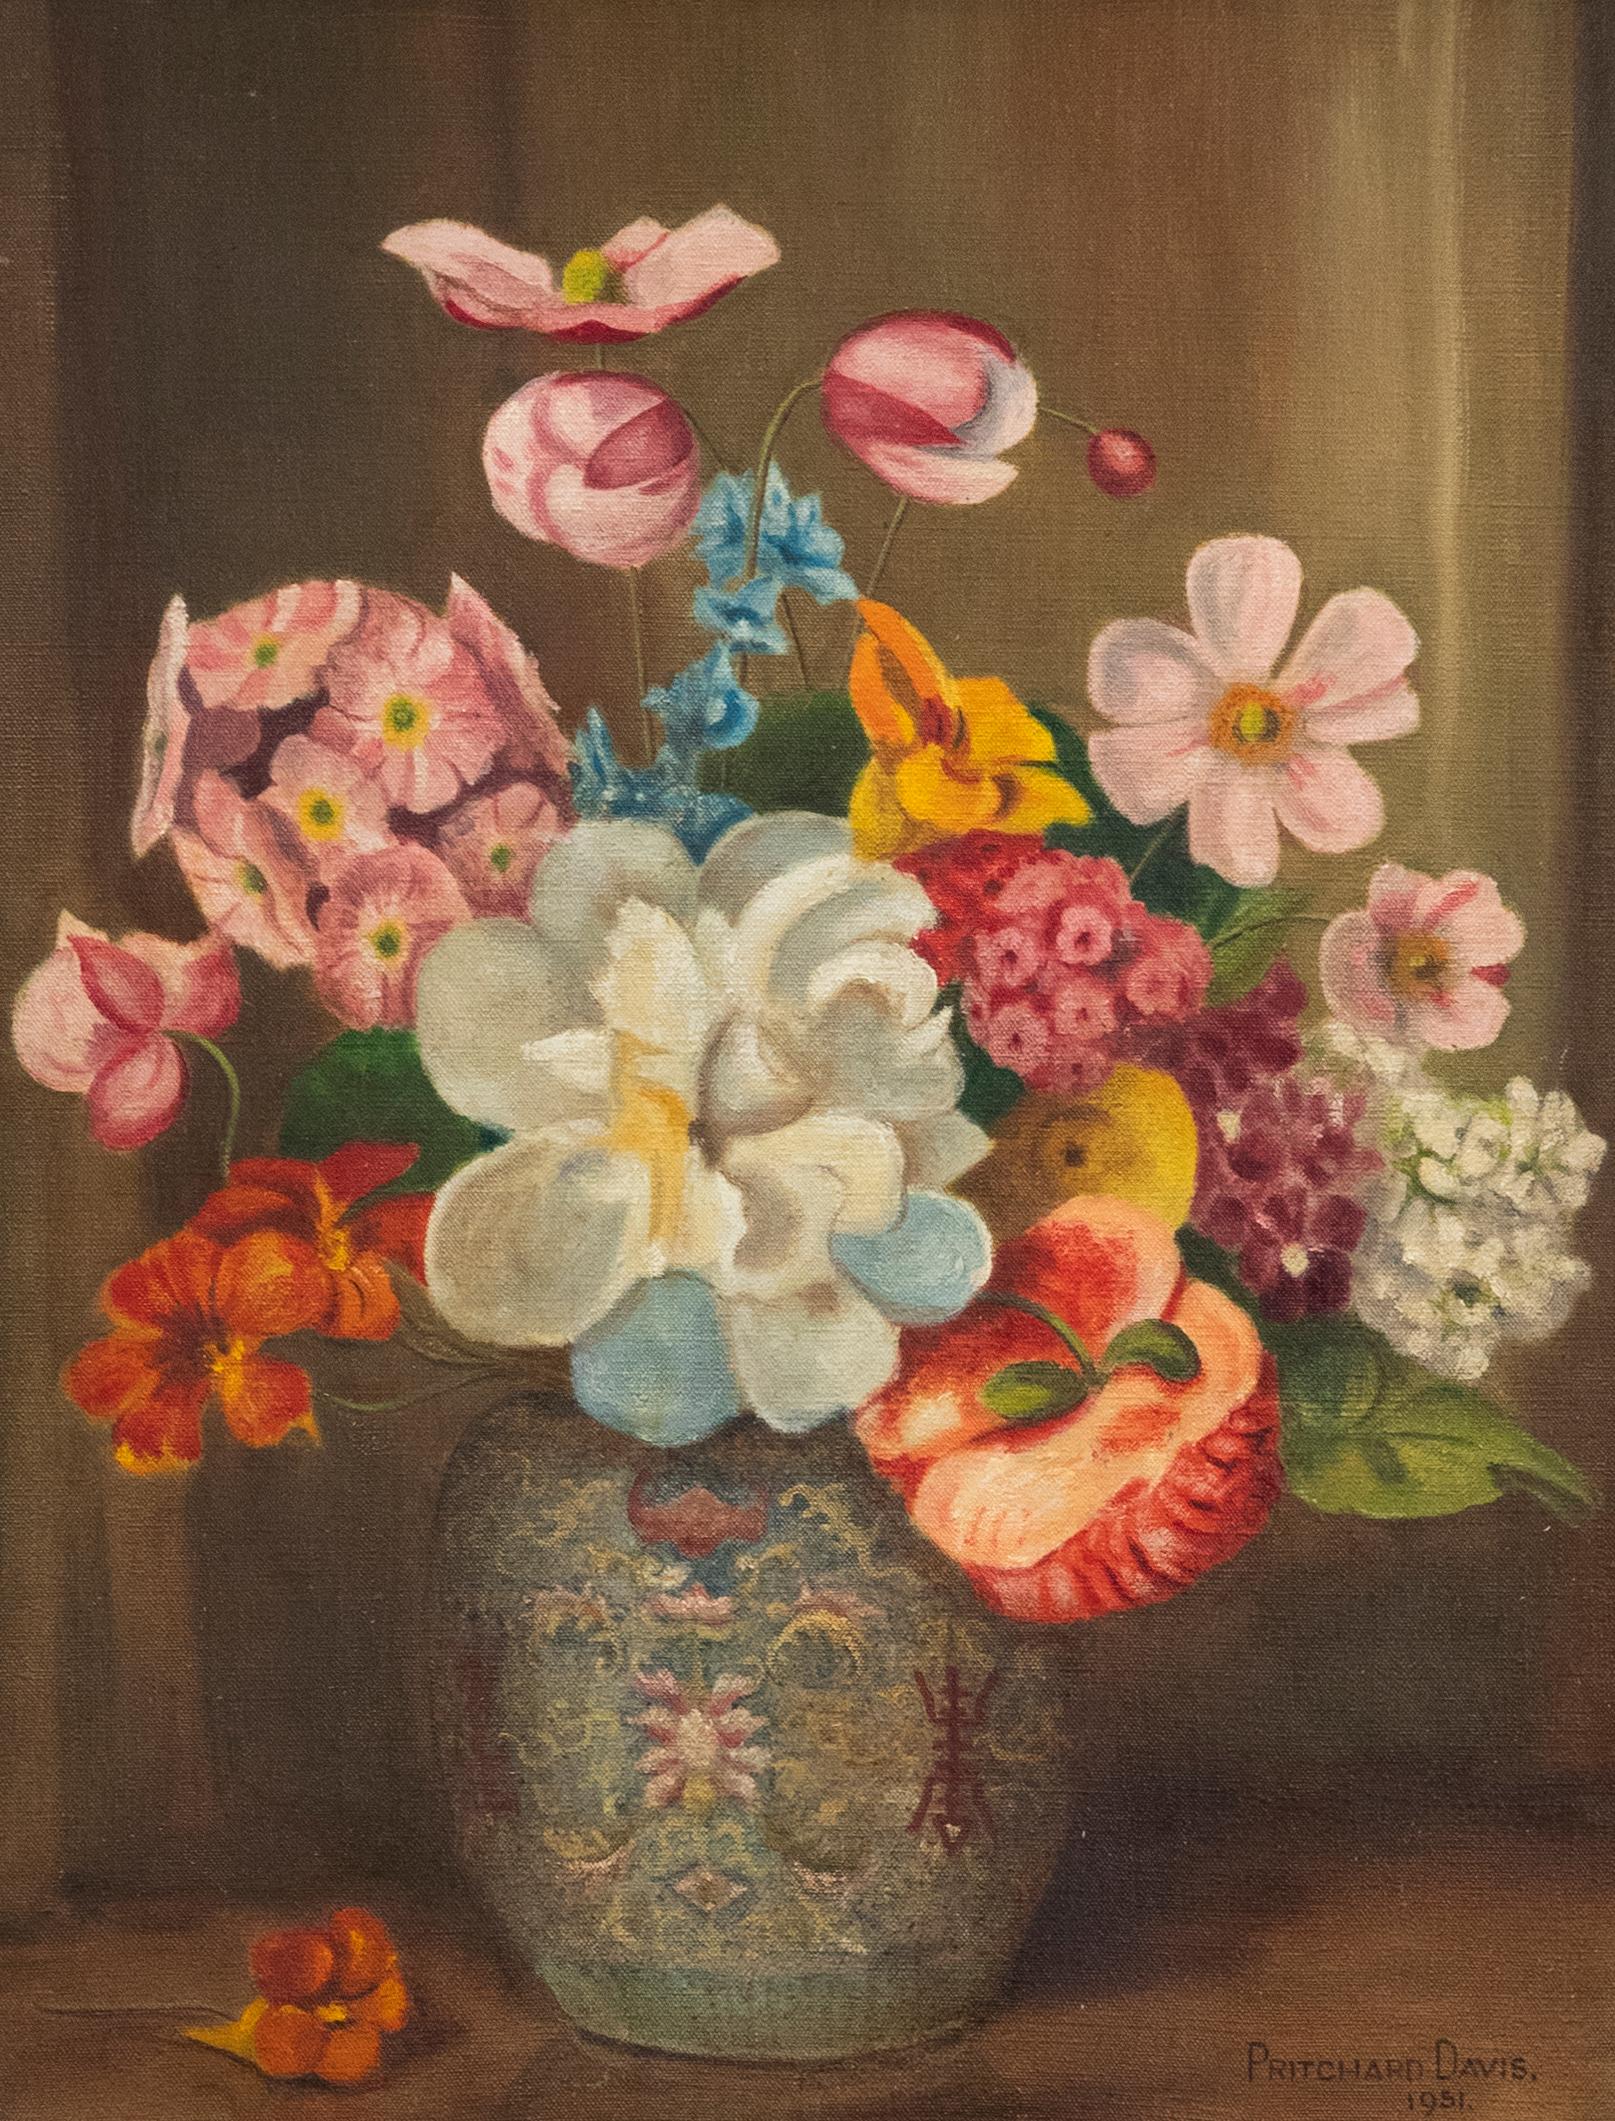 Pritchard Davis - Gerahmtes Öl von 1951, Die chinesische Vase – Painting von Unknown